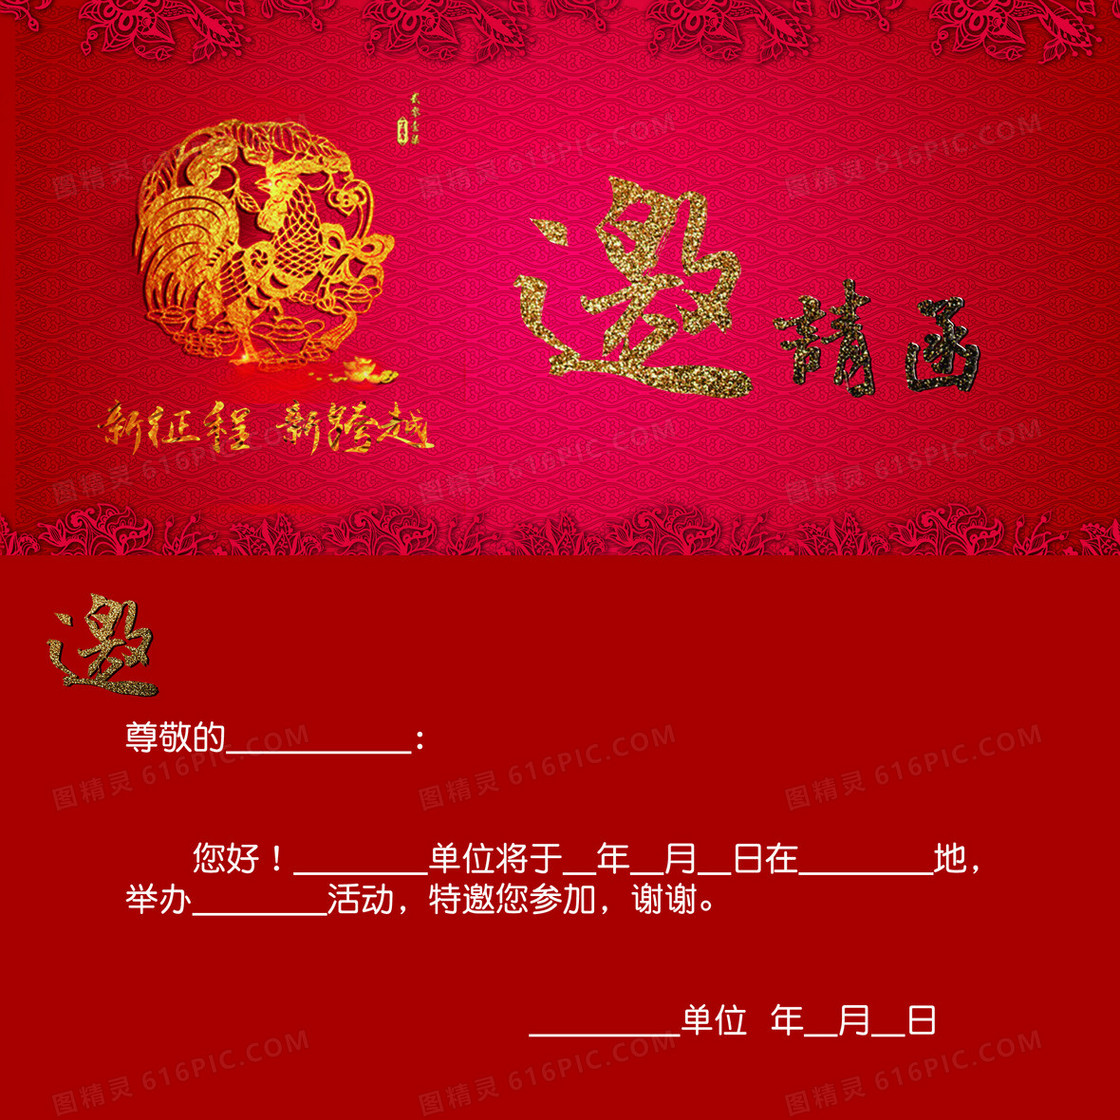 中式红色新春晚会邀请函背景素材